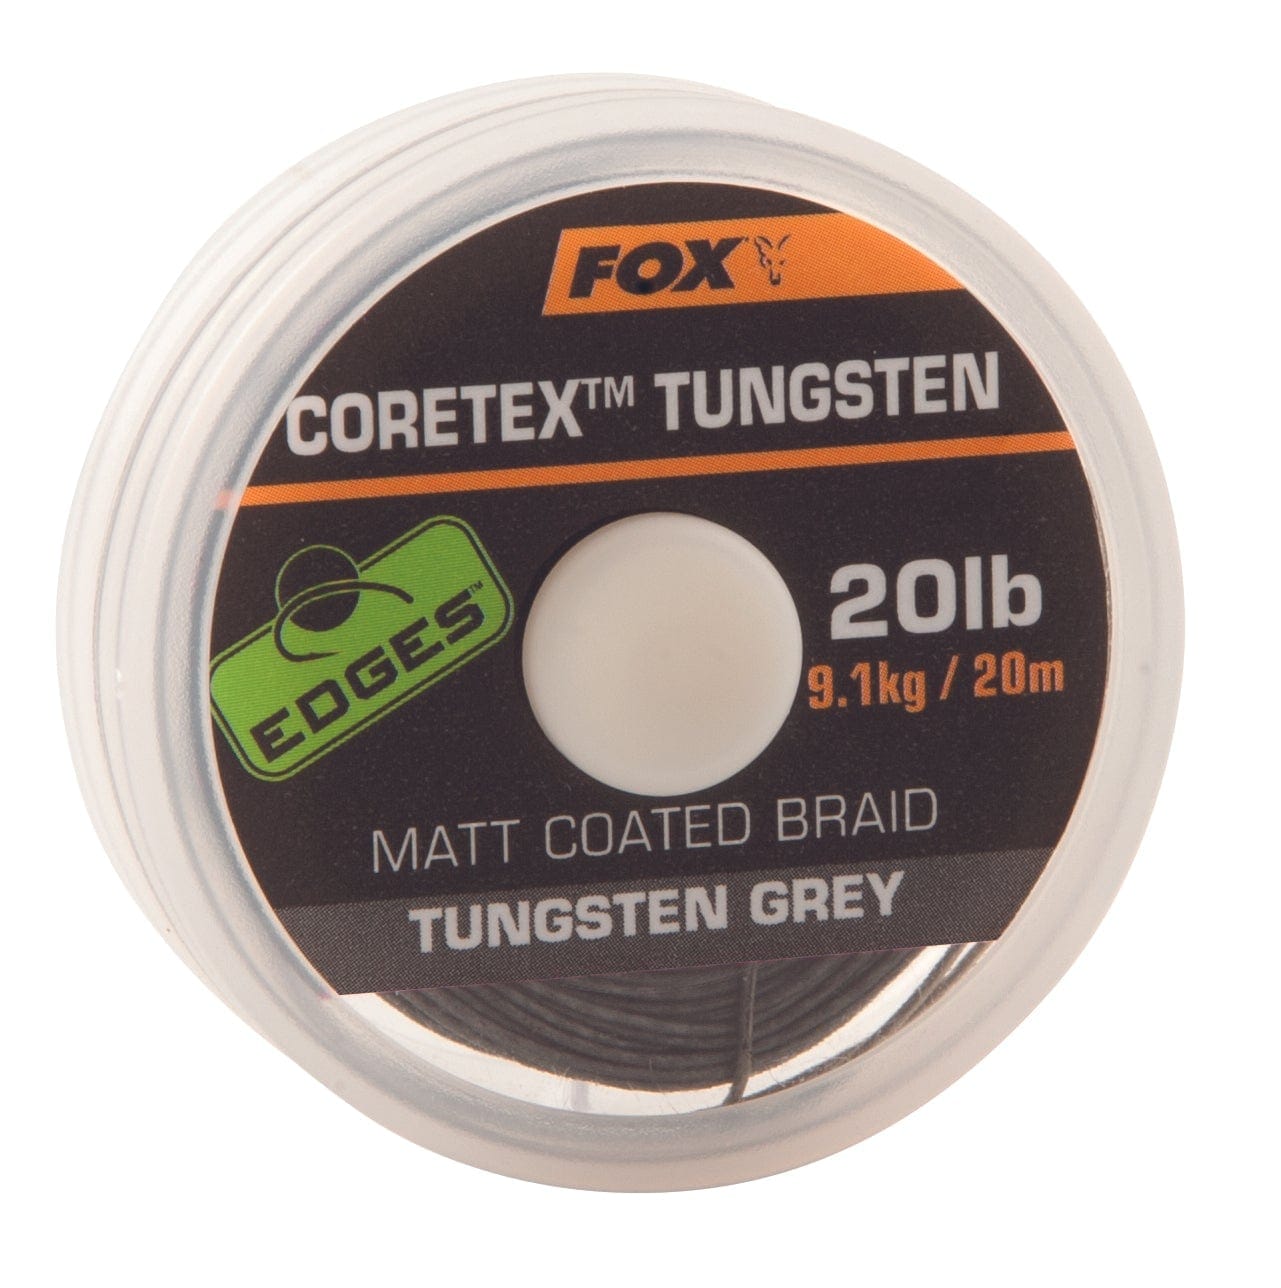 FOX Coretex Tungsten 20lb.